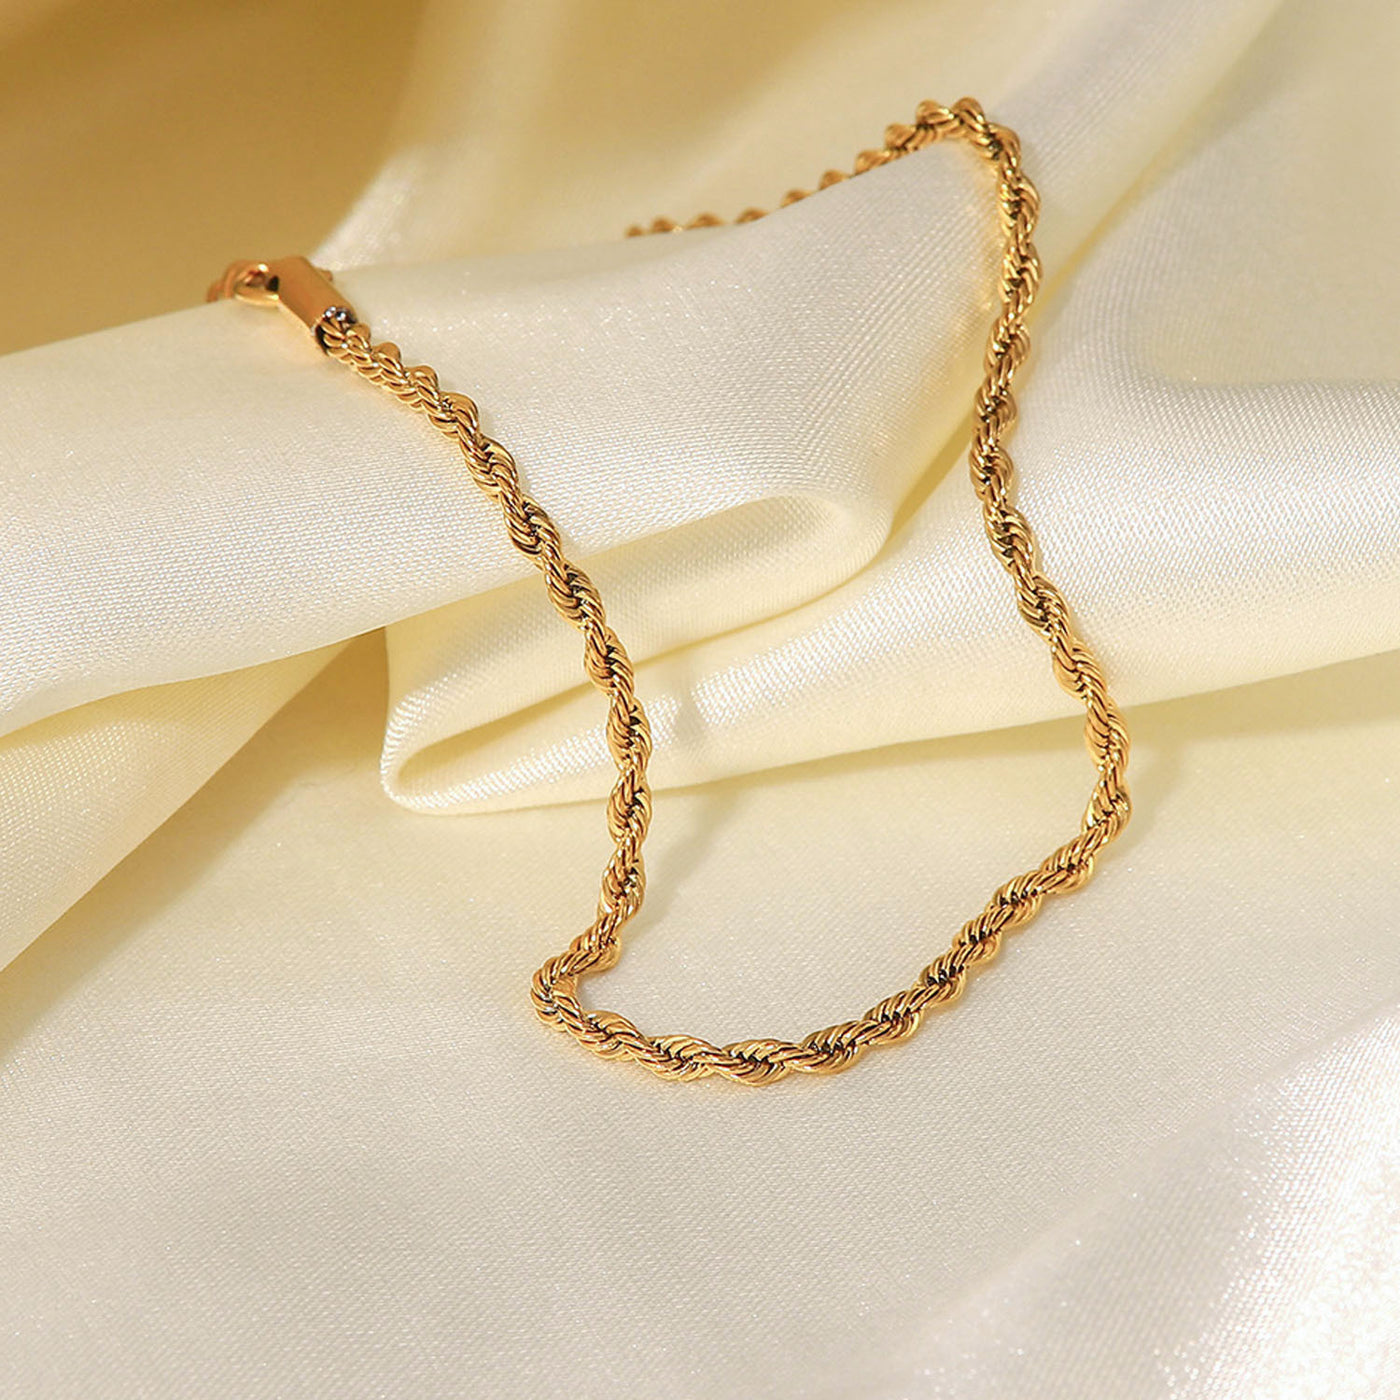 Classic fashion golden twist chain design versatile anklet - Syble's